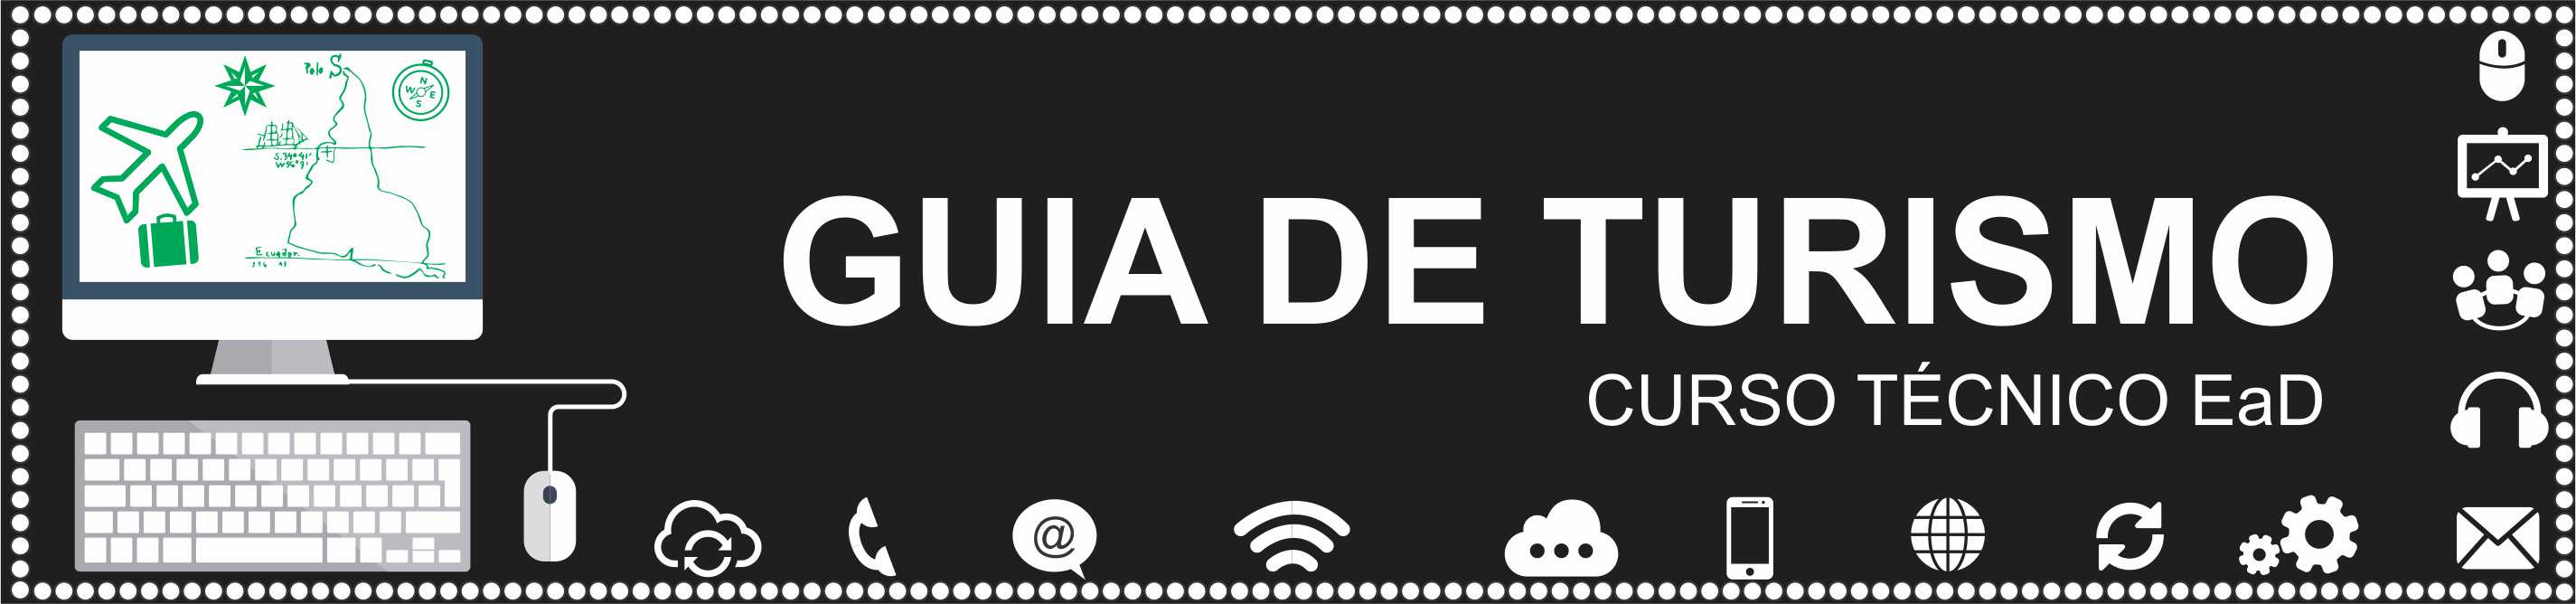 Logo do curso Técnico em Guia de Turismo